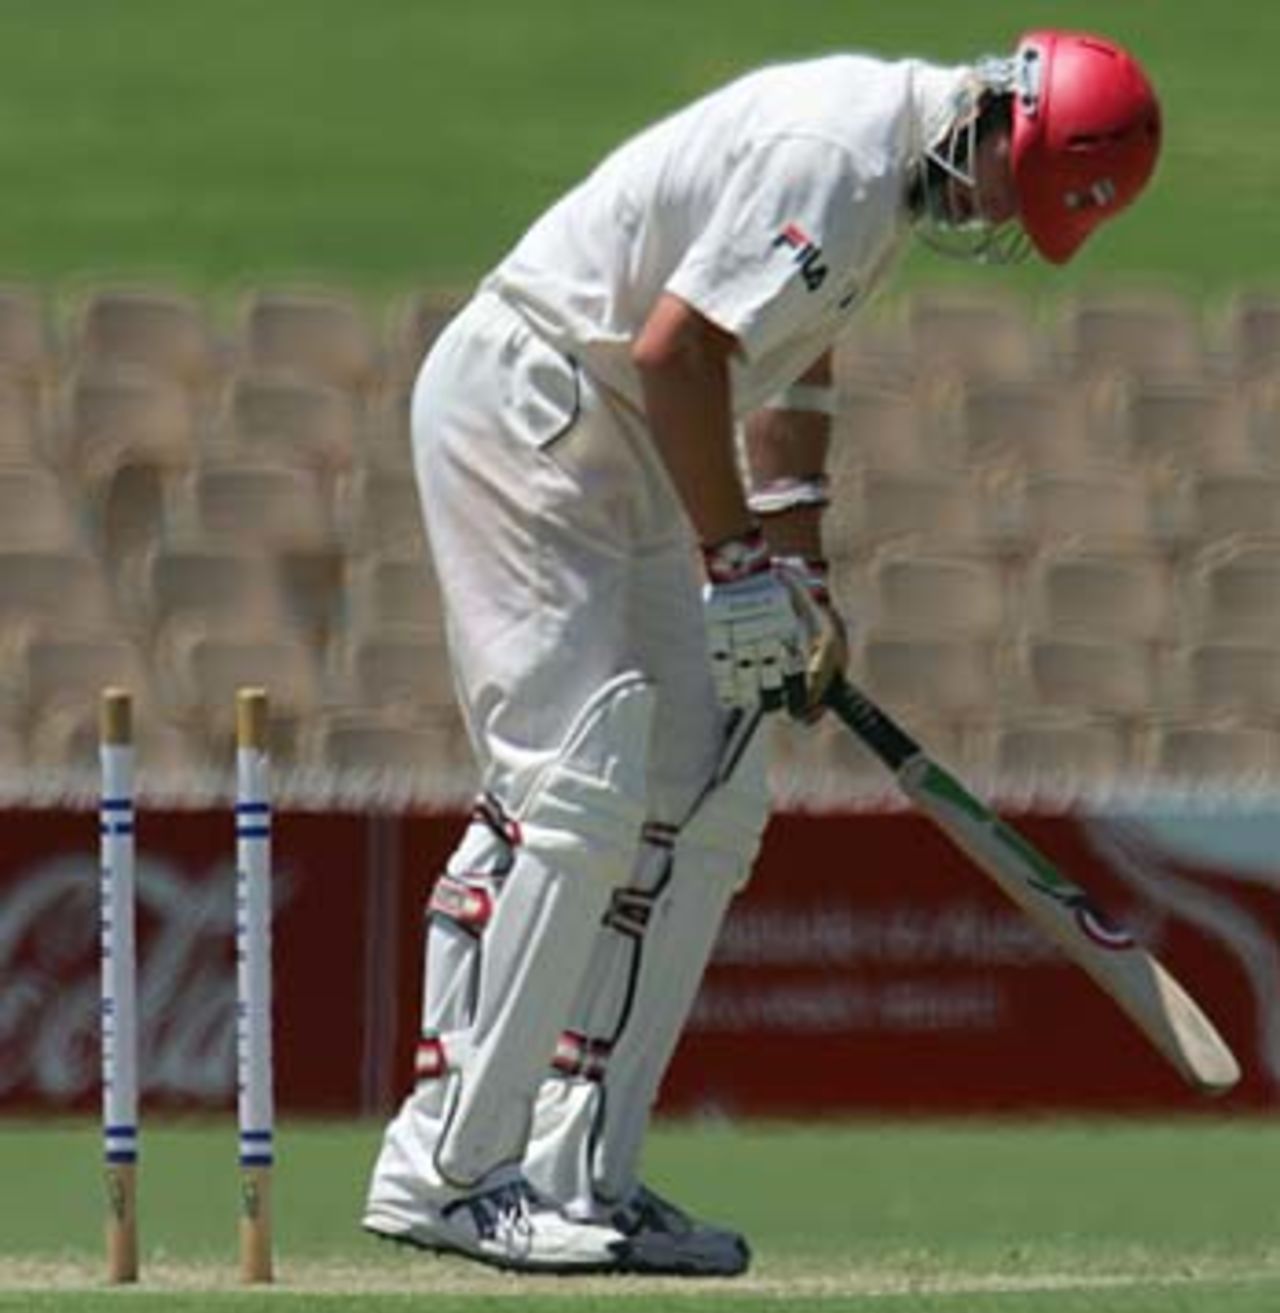 Shaun Tait is bowled for 2, South Australian v West Australia, Adelaide, December 20, 2004